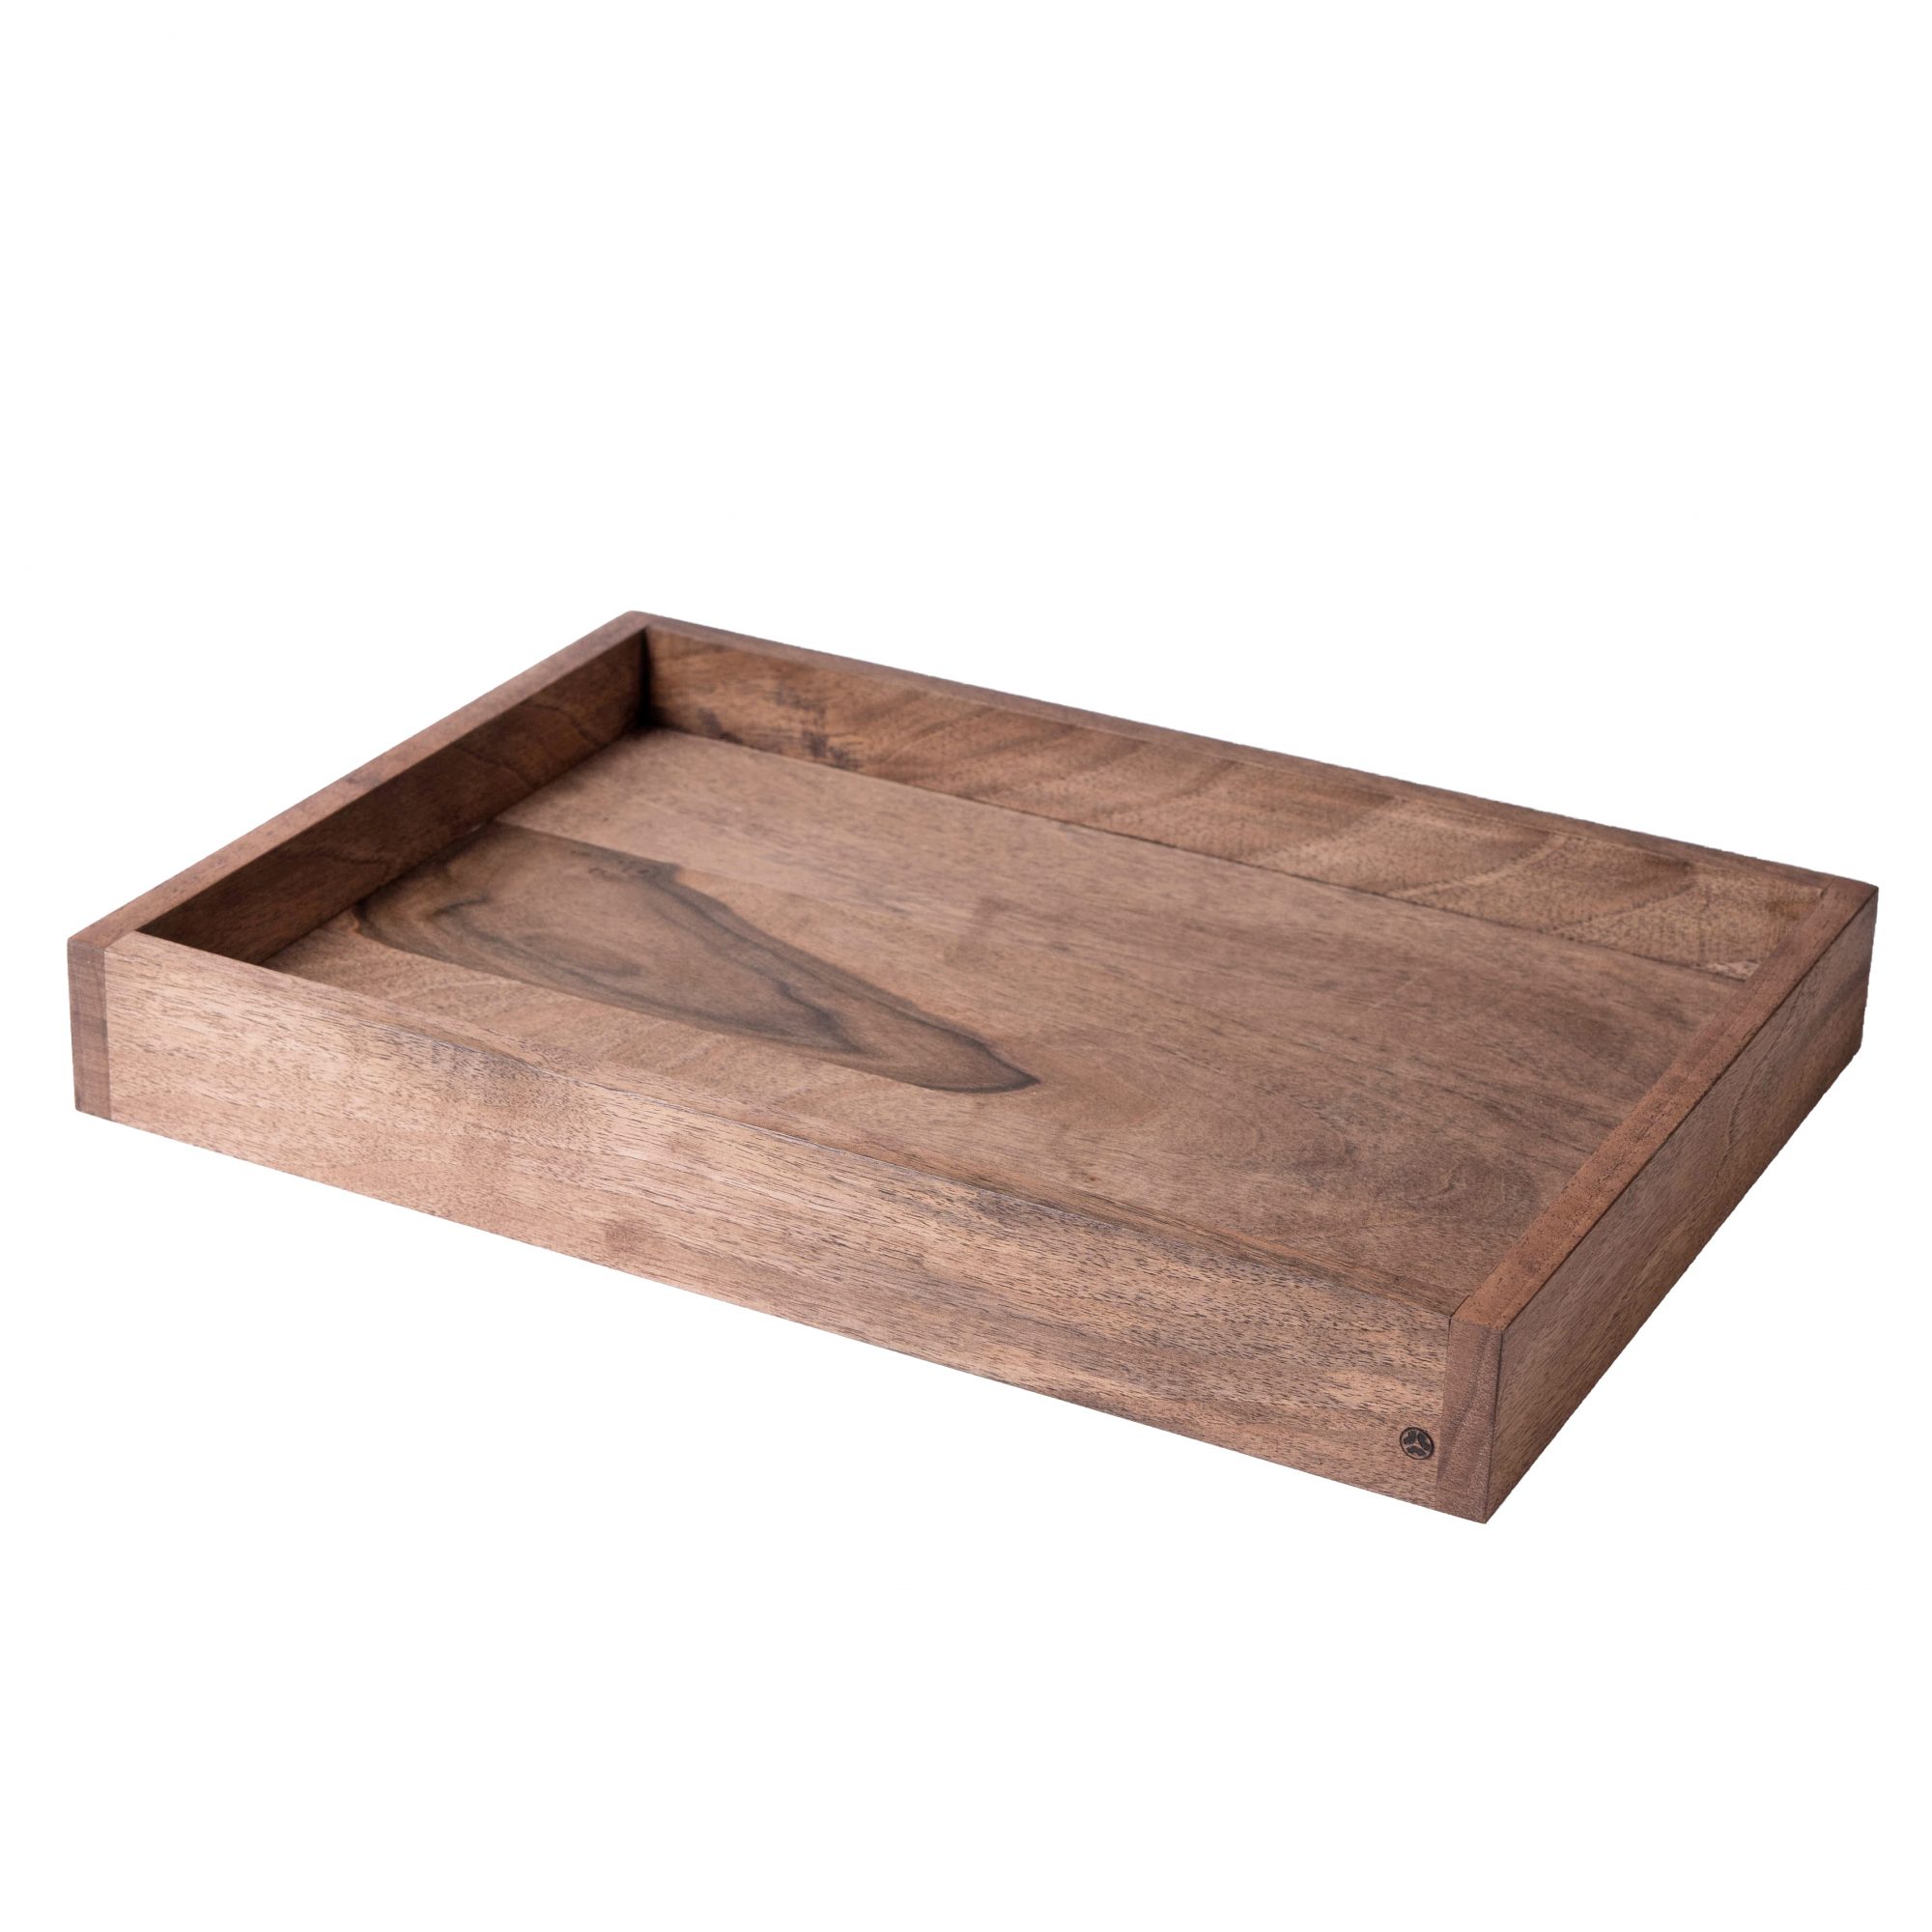 Signature Wooden Tray – Walnut Small